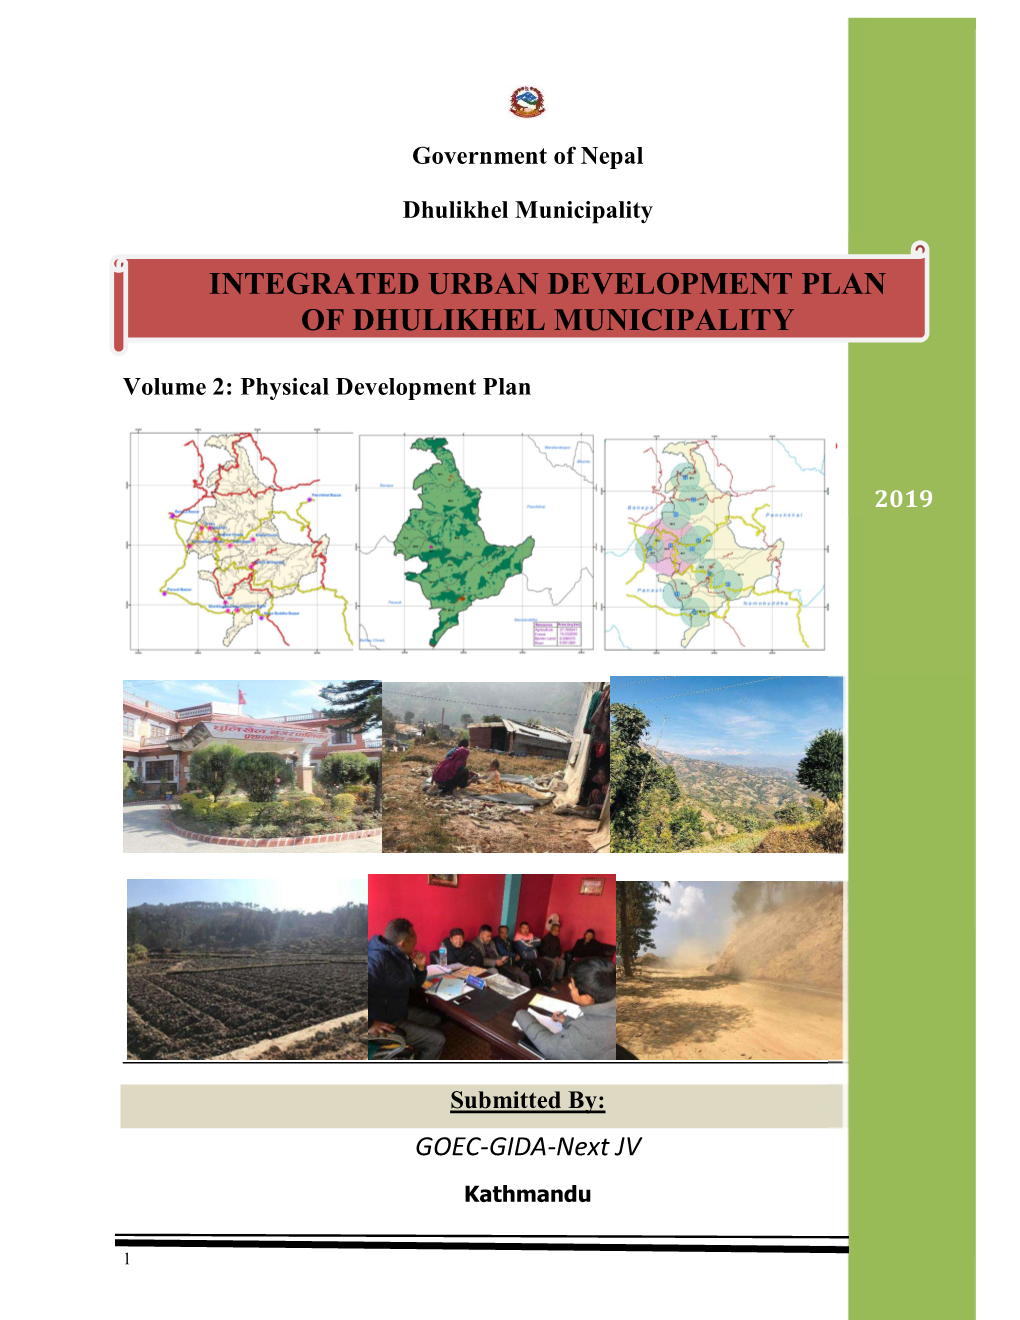 Integrated Urban Development Plan of Dhulikhel Municipality 2019